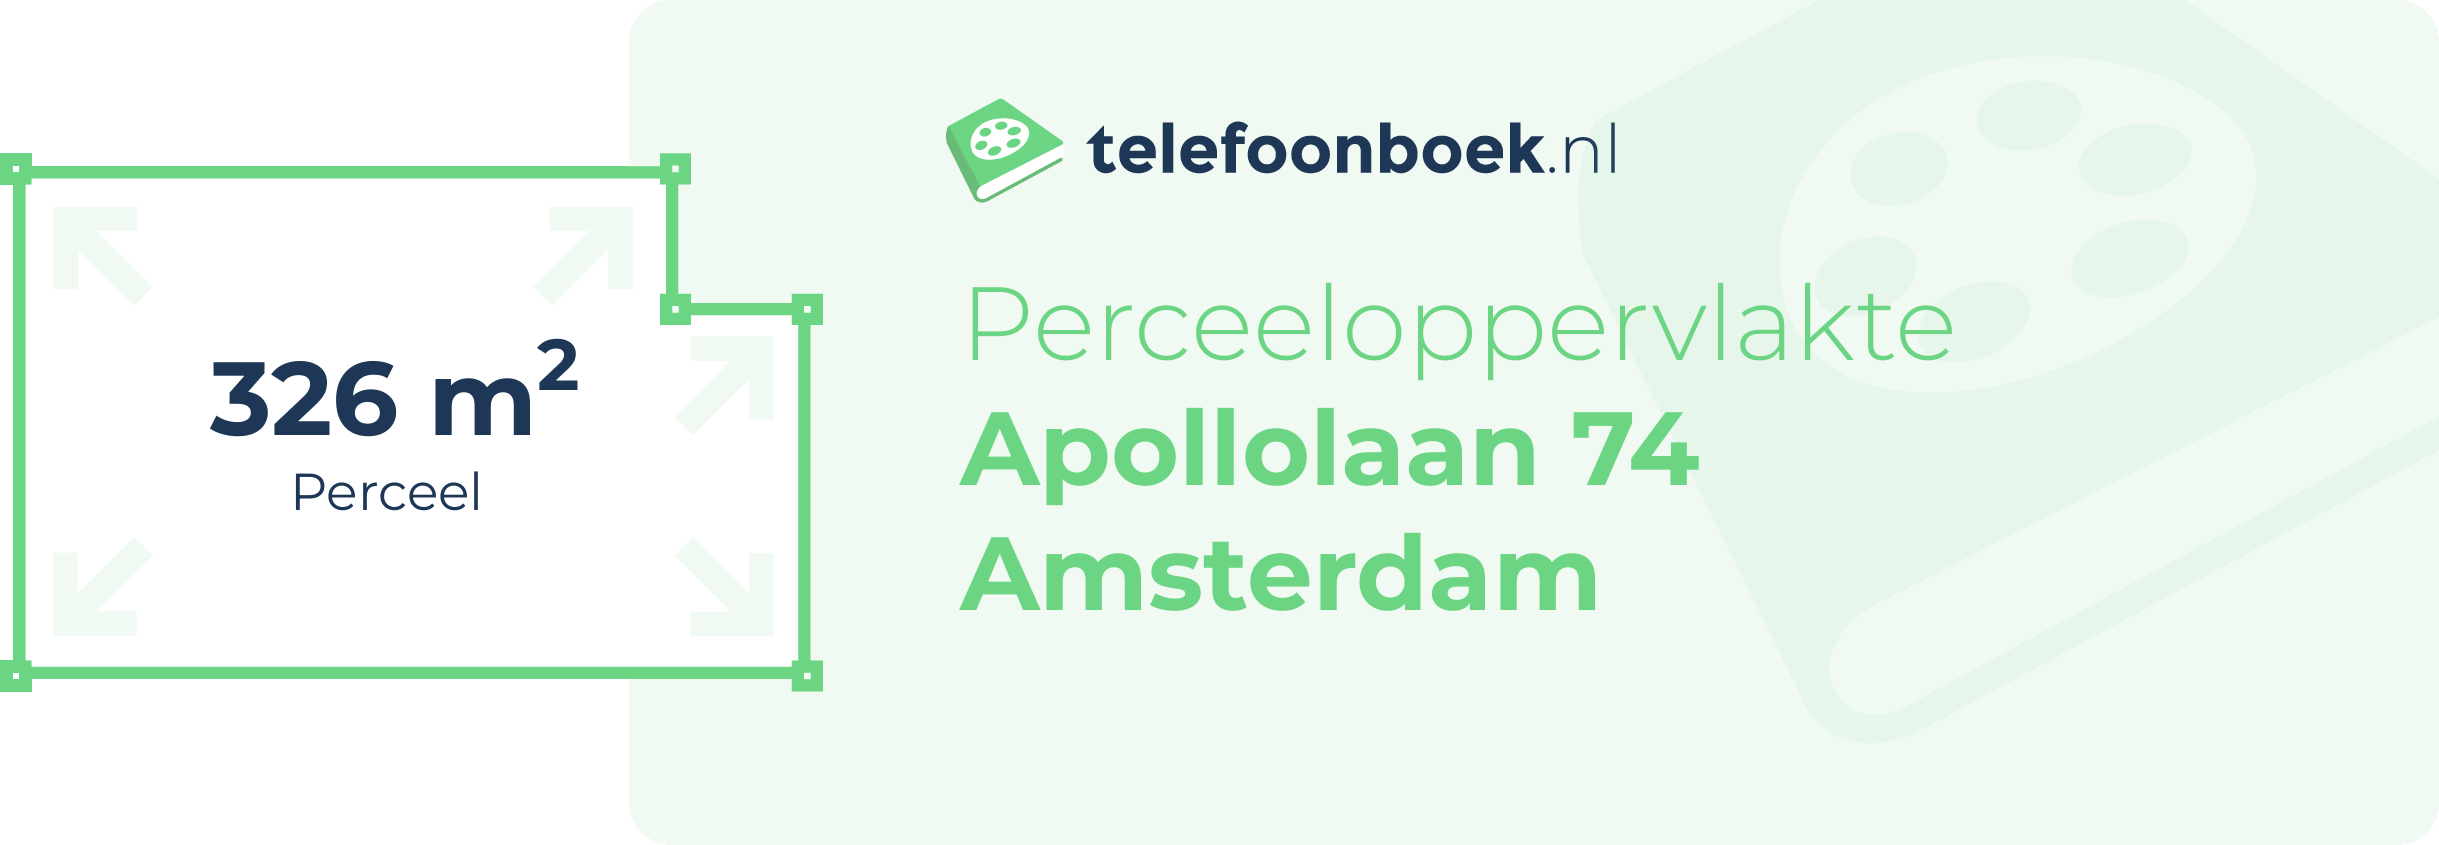 Perceeloppervlakte Apollolaan 74 Amsterdam